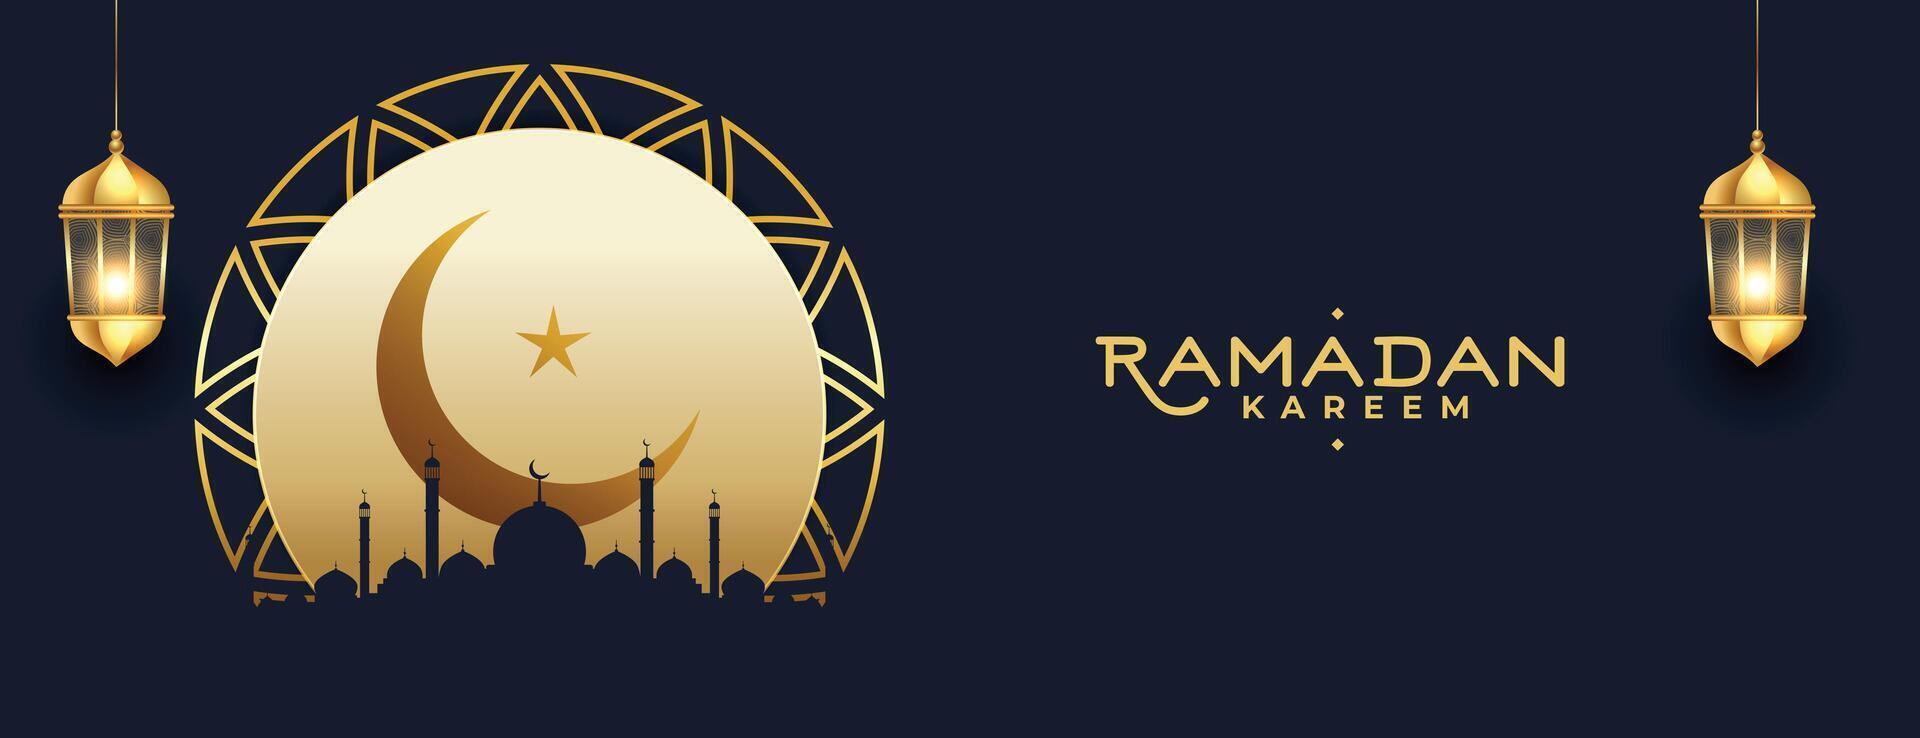 Ramadan kareem Festival Jahreszeit Banner mit Mond und Laterne vektor